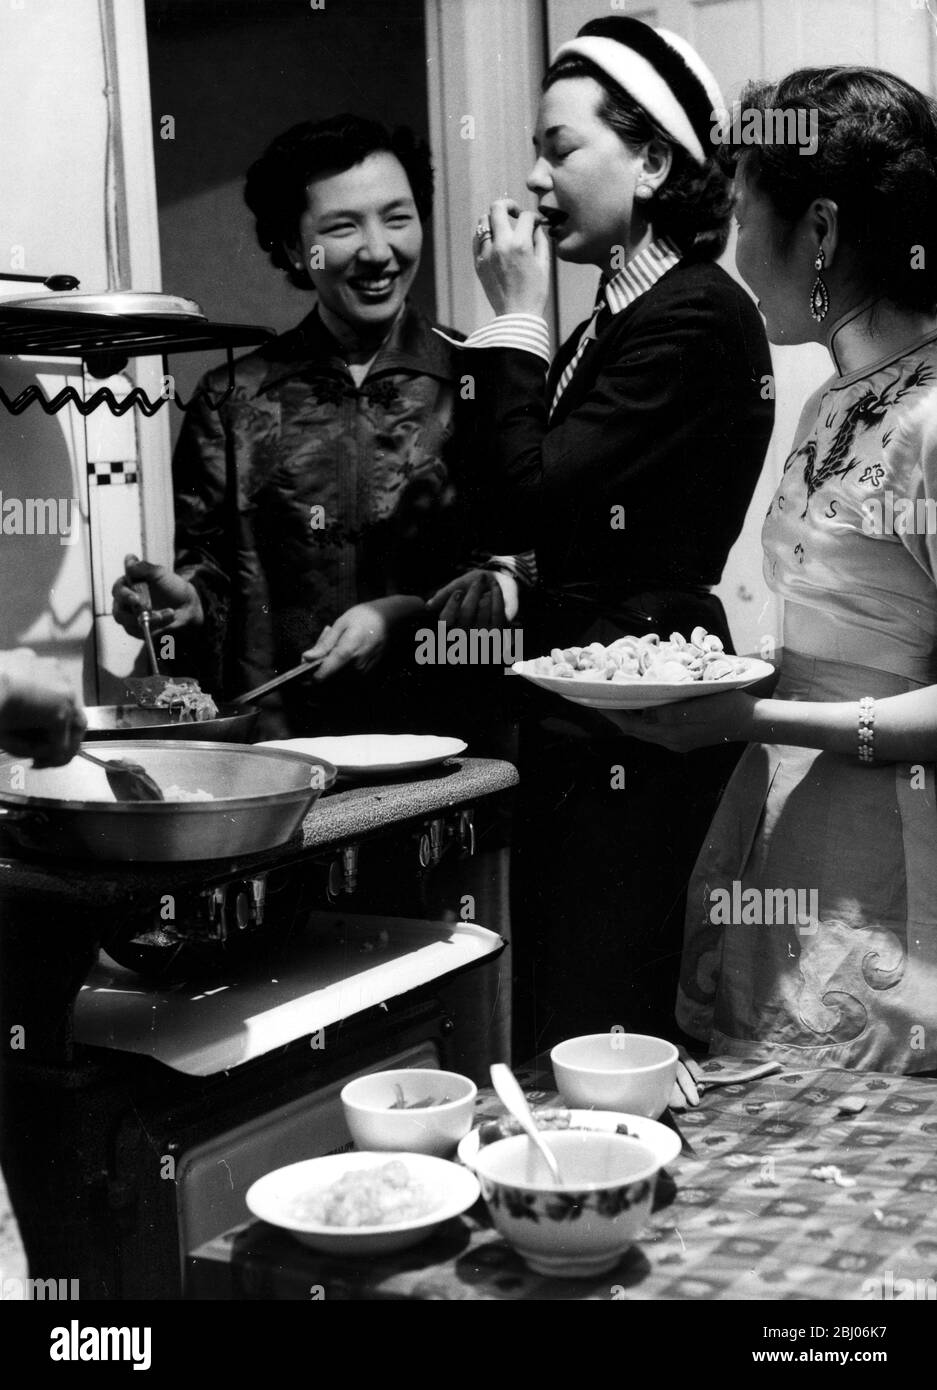 Mme Hsu donne quelques conseils chinois à une mariée. - Mme P y Hsu propriétaire du nouveau restaurant chinois de Londres montre l'écrivain illustré Anne Alexeiev comment cuisiner et manger la nourriture de la manière chinoise. Mme Hsu et son équipe de jeunes filles chinoises feront la démonstration à la Foire alimentaire britannique. - la nourriture est prévue sur la table du dîner - 11 septembre 1954 Banque D'Images